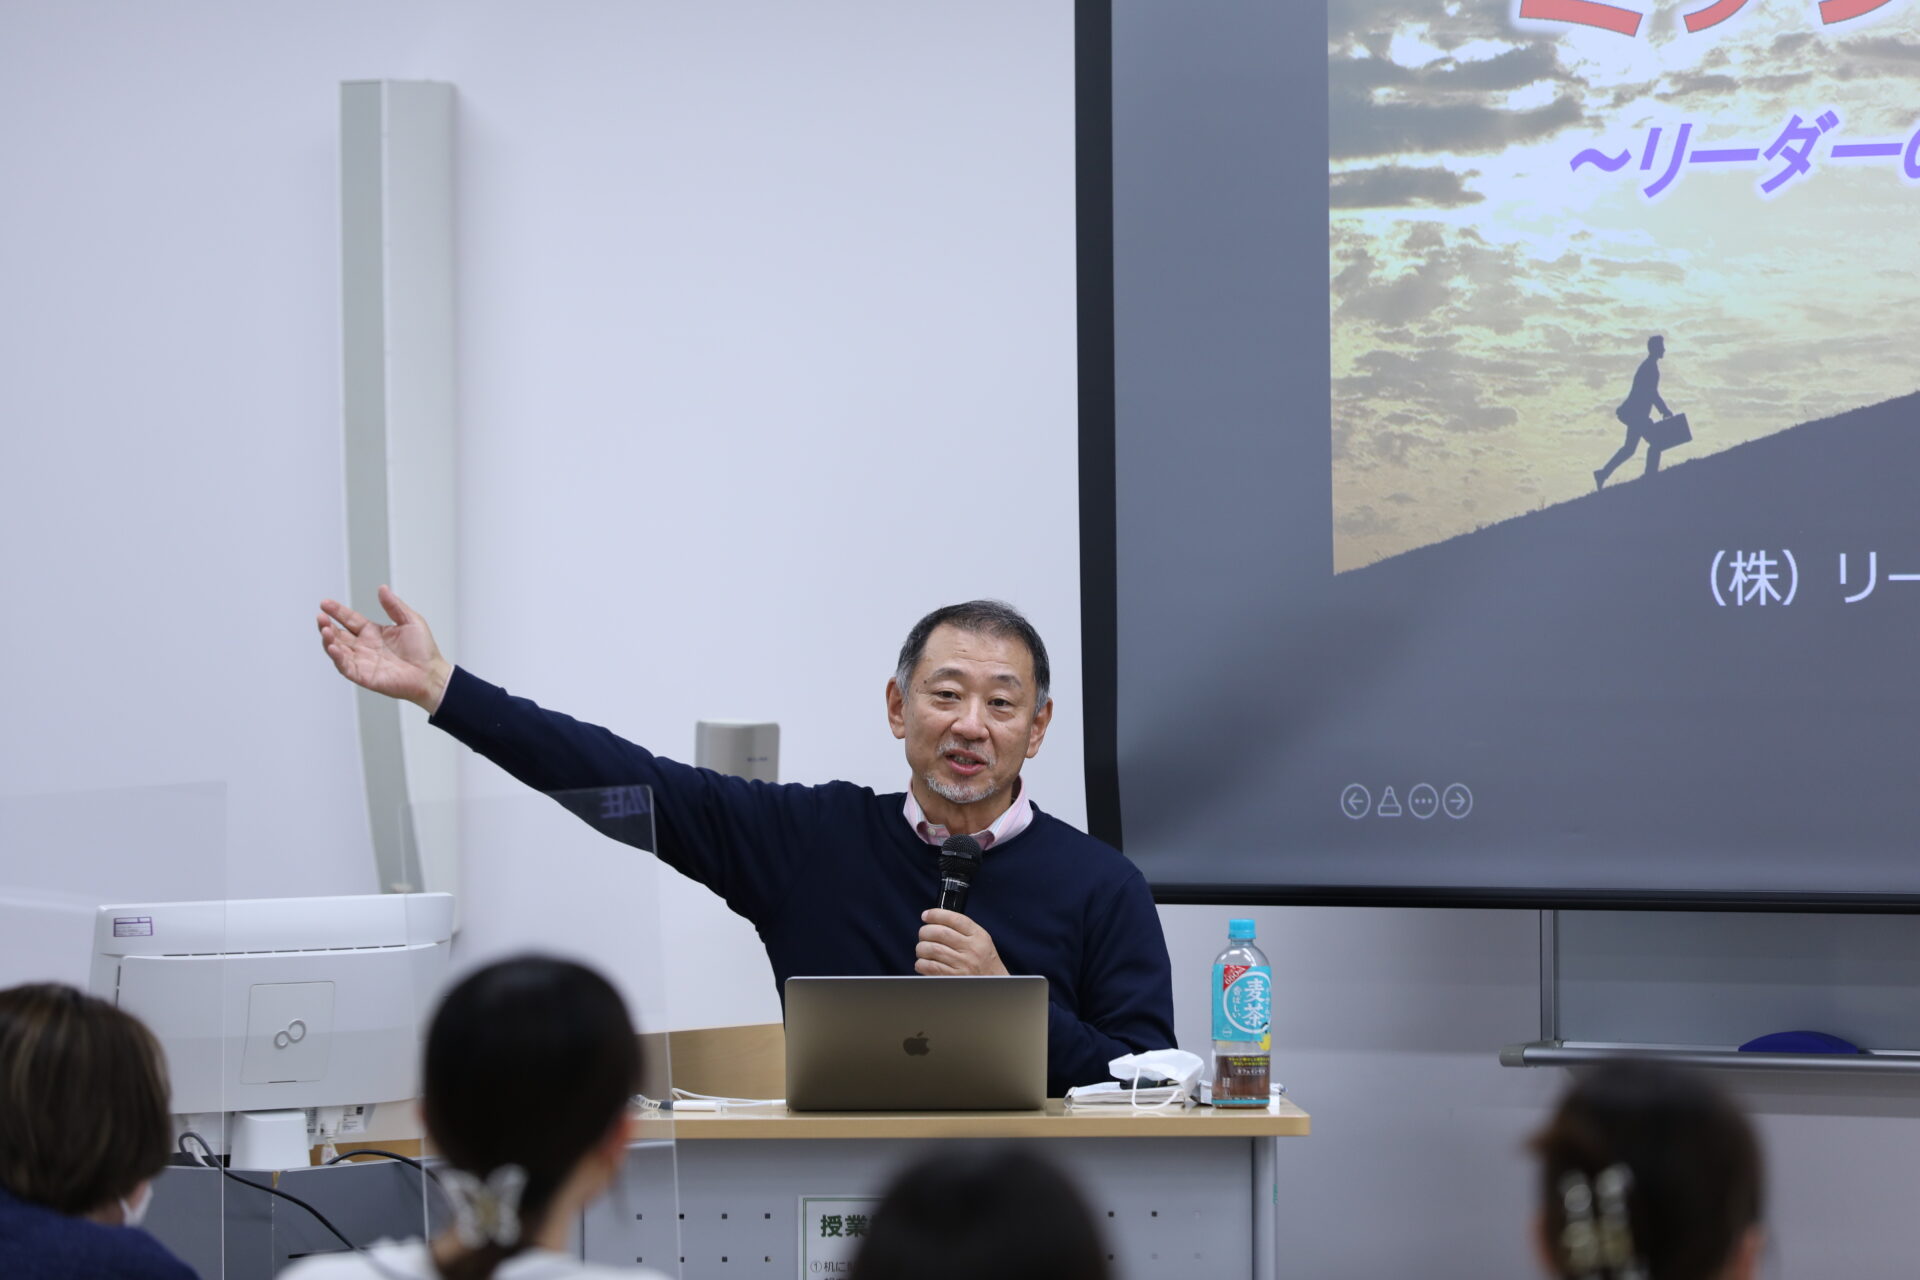 「キャリアデザイン」の授業で元スターバックスCEOの岩田松雄氏が「ミッション」についての講演を行いました。